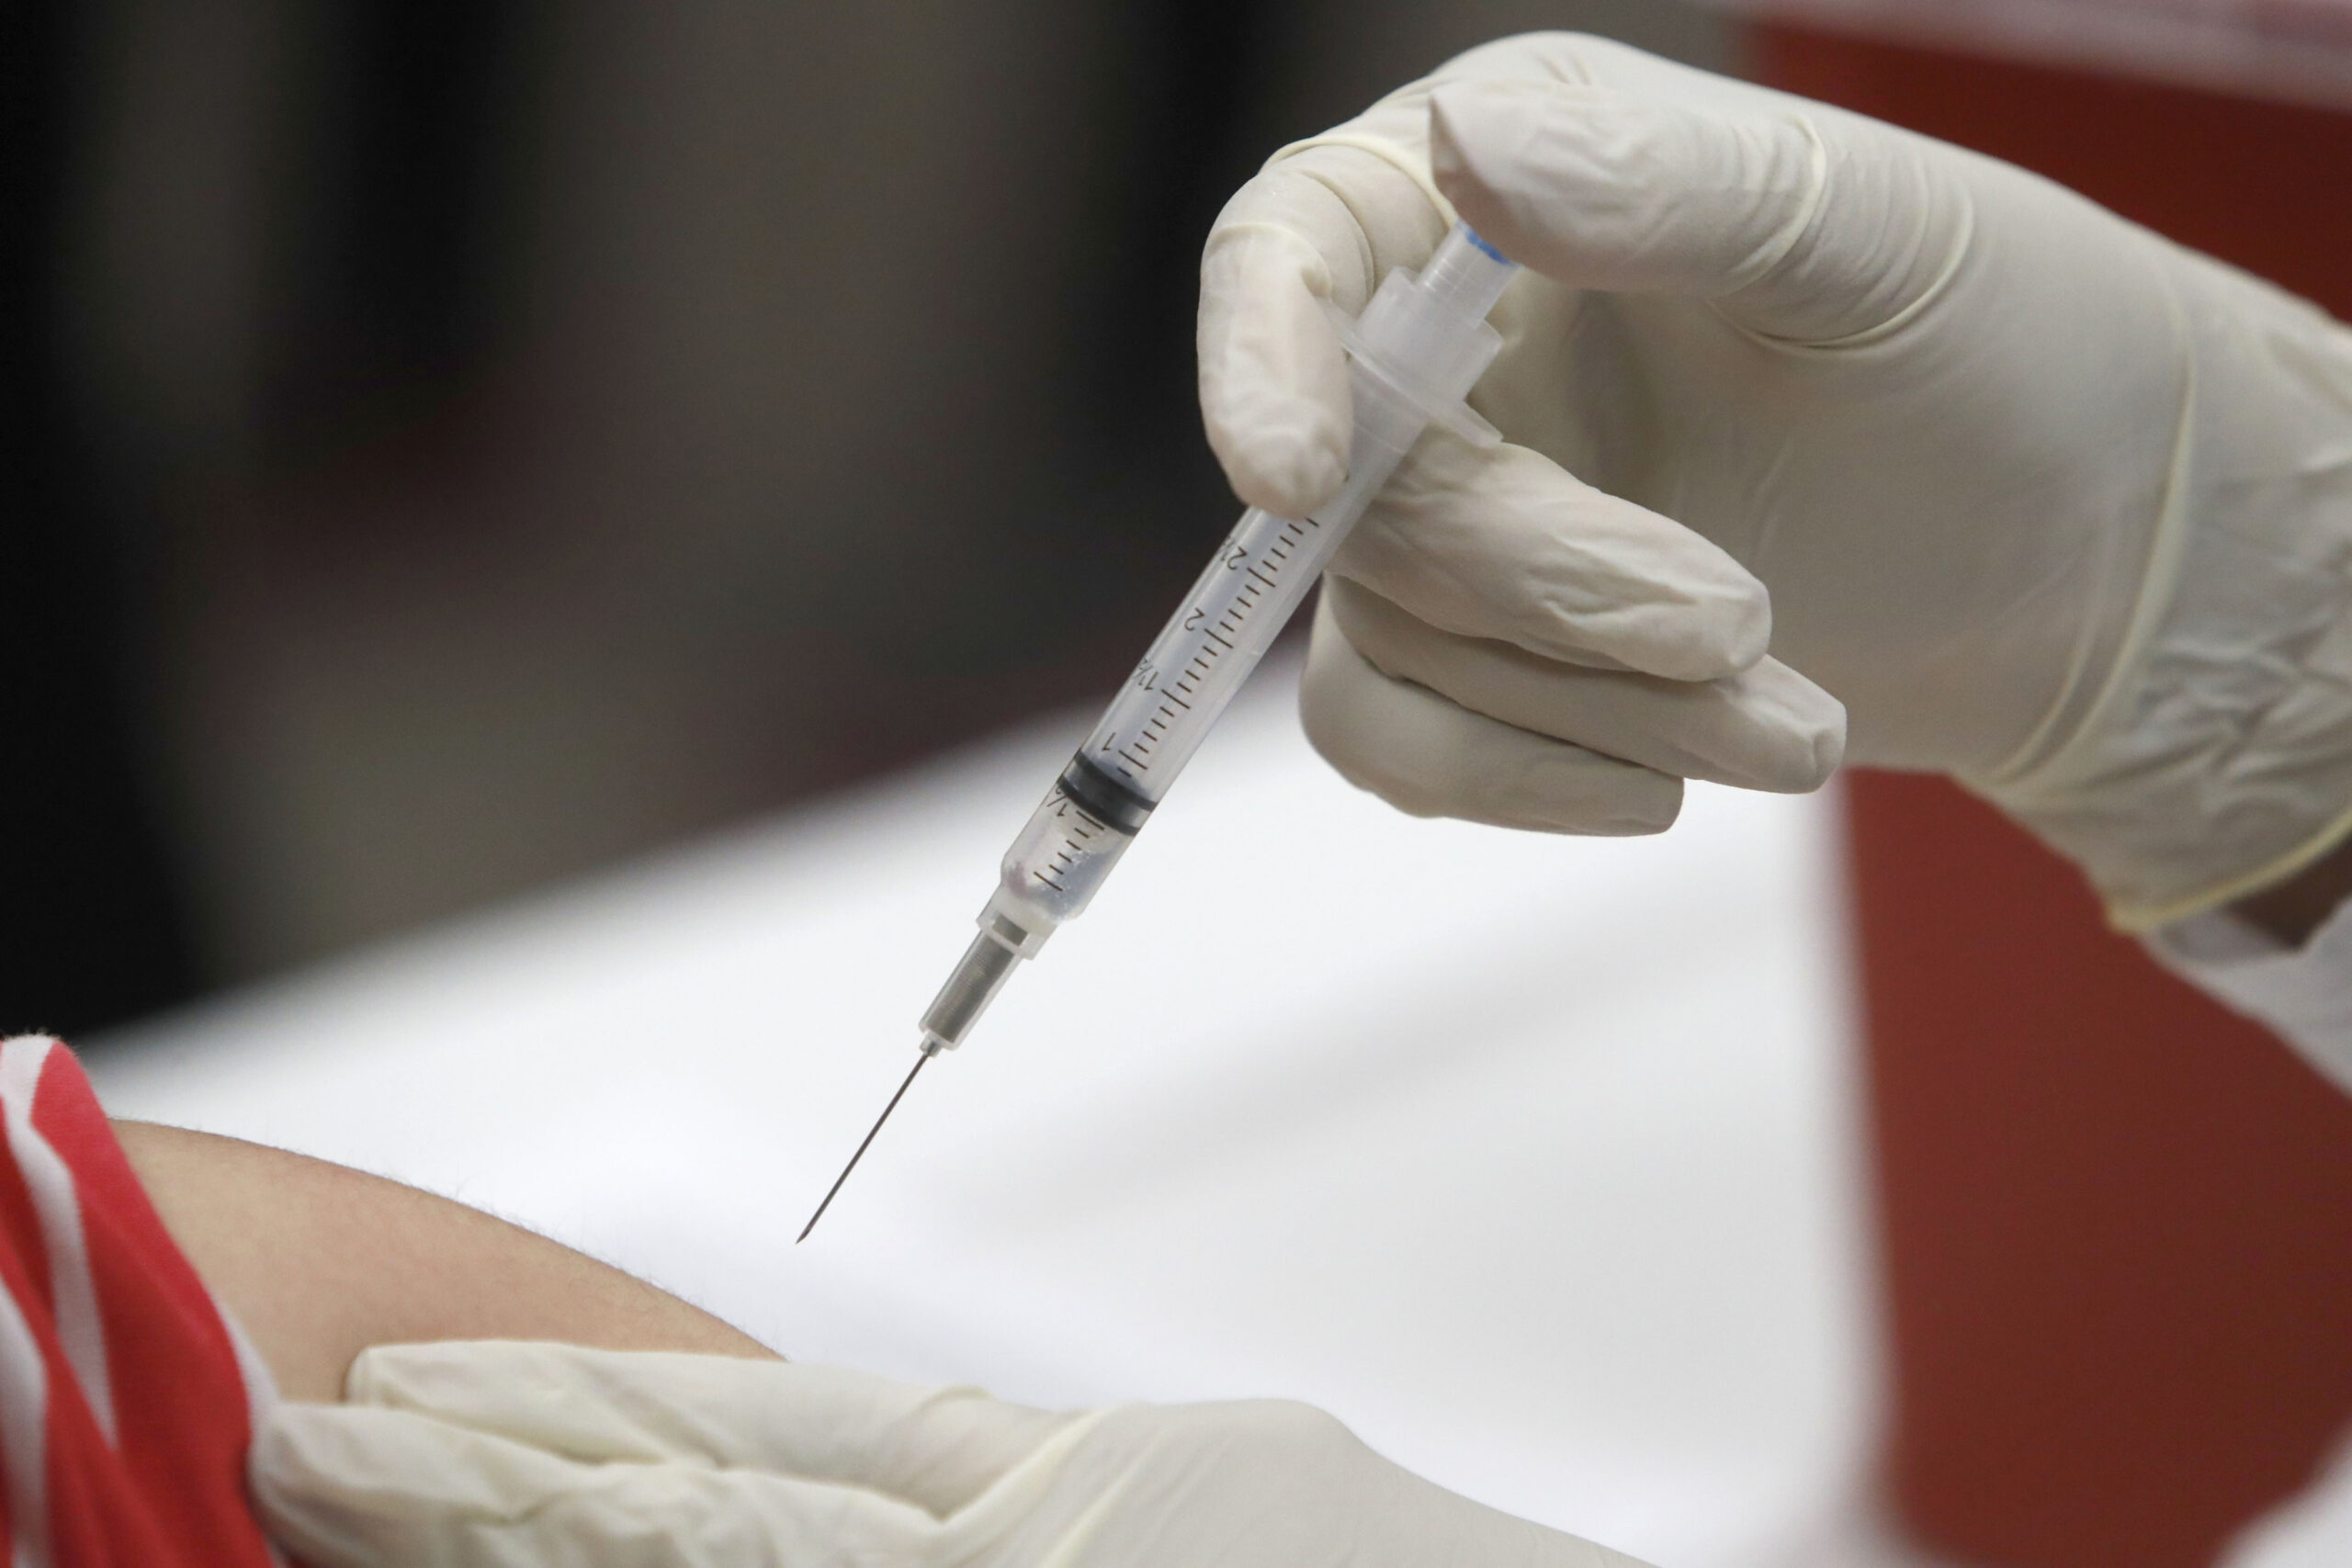 a patient receives an influenza vaccine